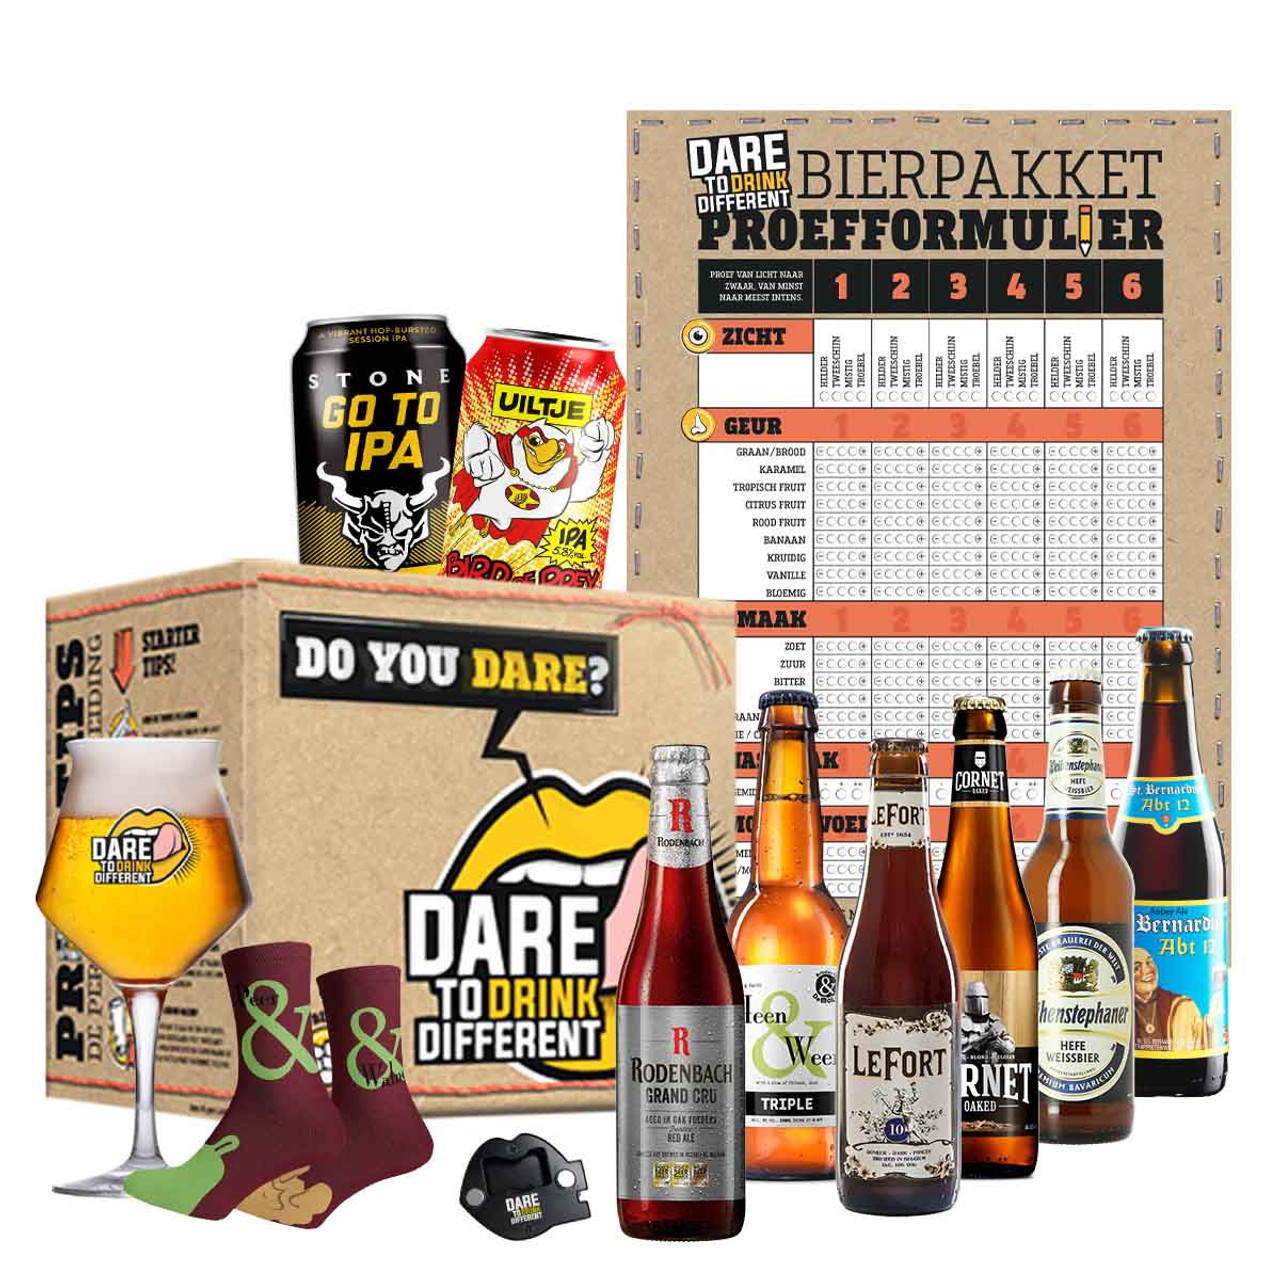 Feestelijk Verjaardags Bierpakket: Proost op een Jaartje Ouder!